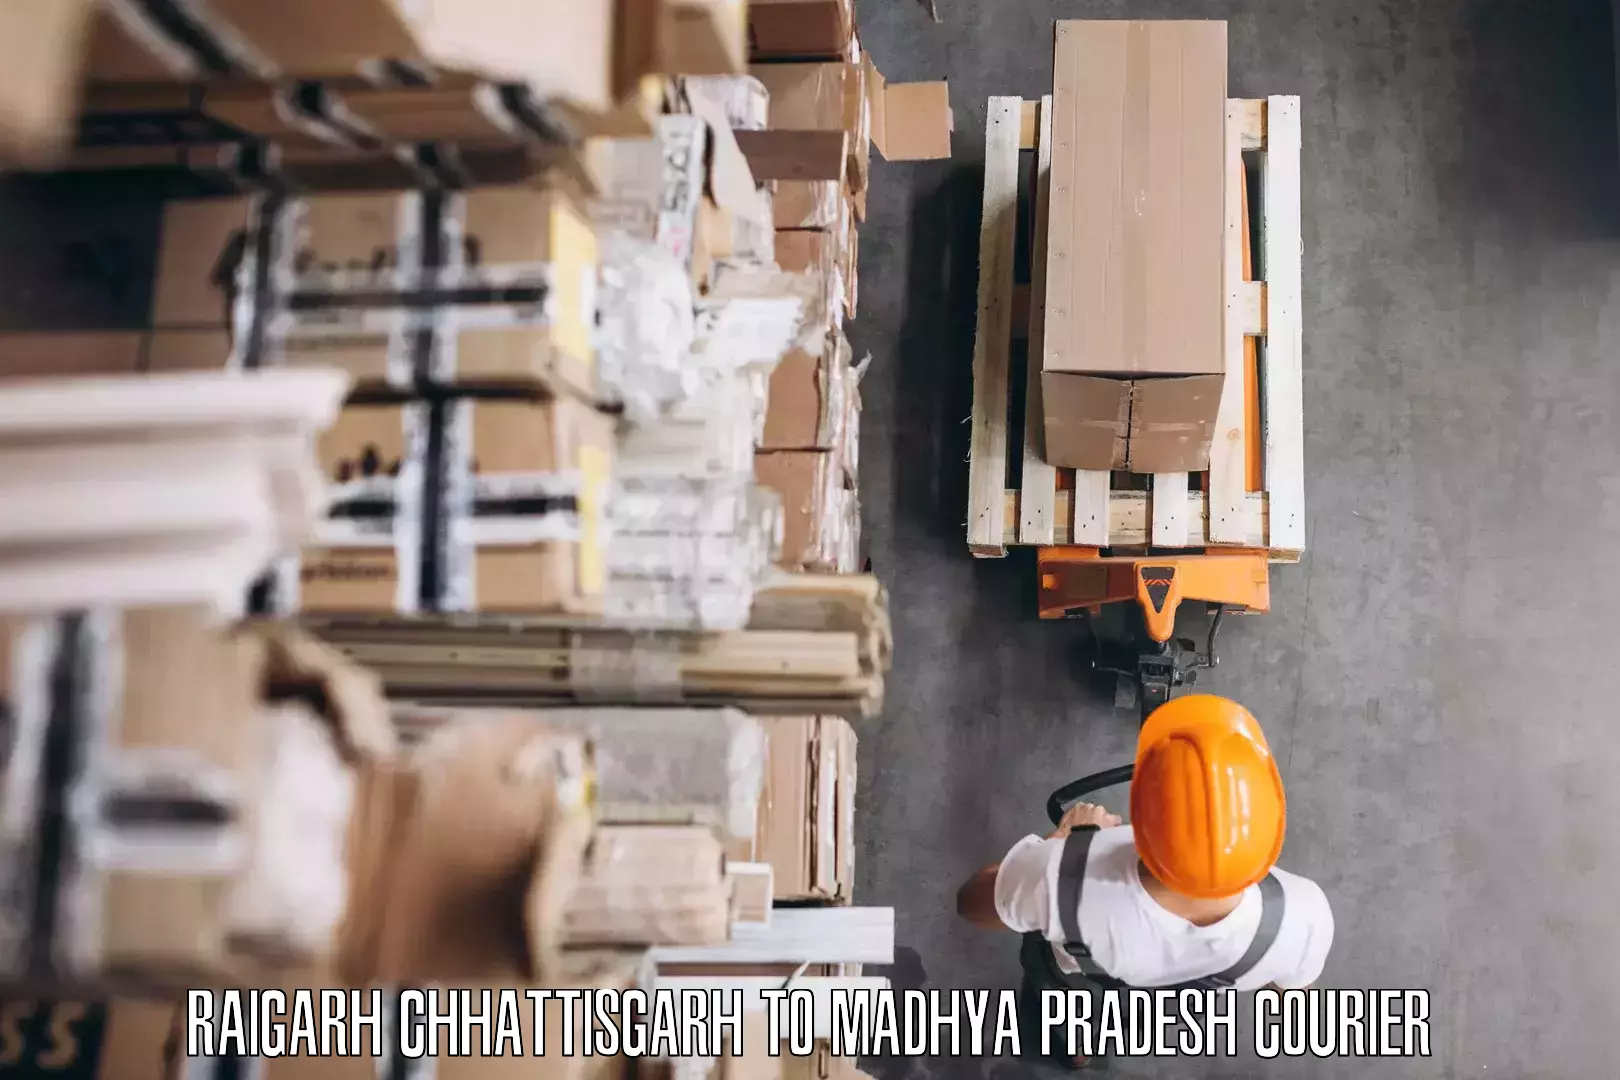 Furniture transport and storage Raigarh Chhattisgarh to Jatara